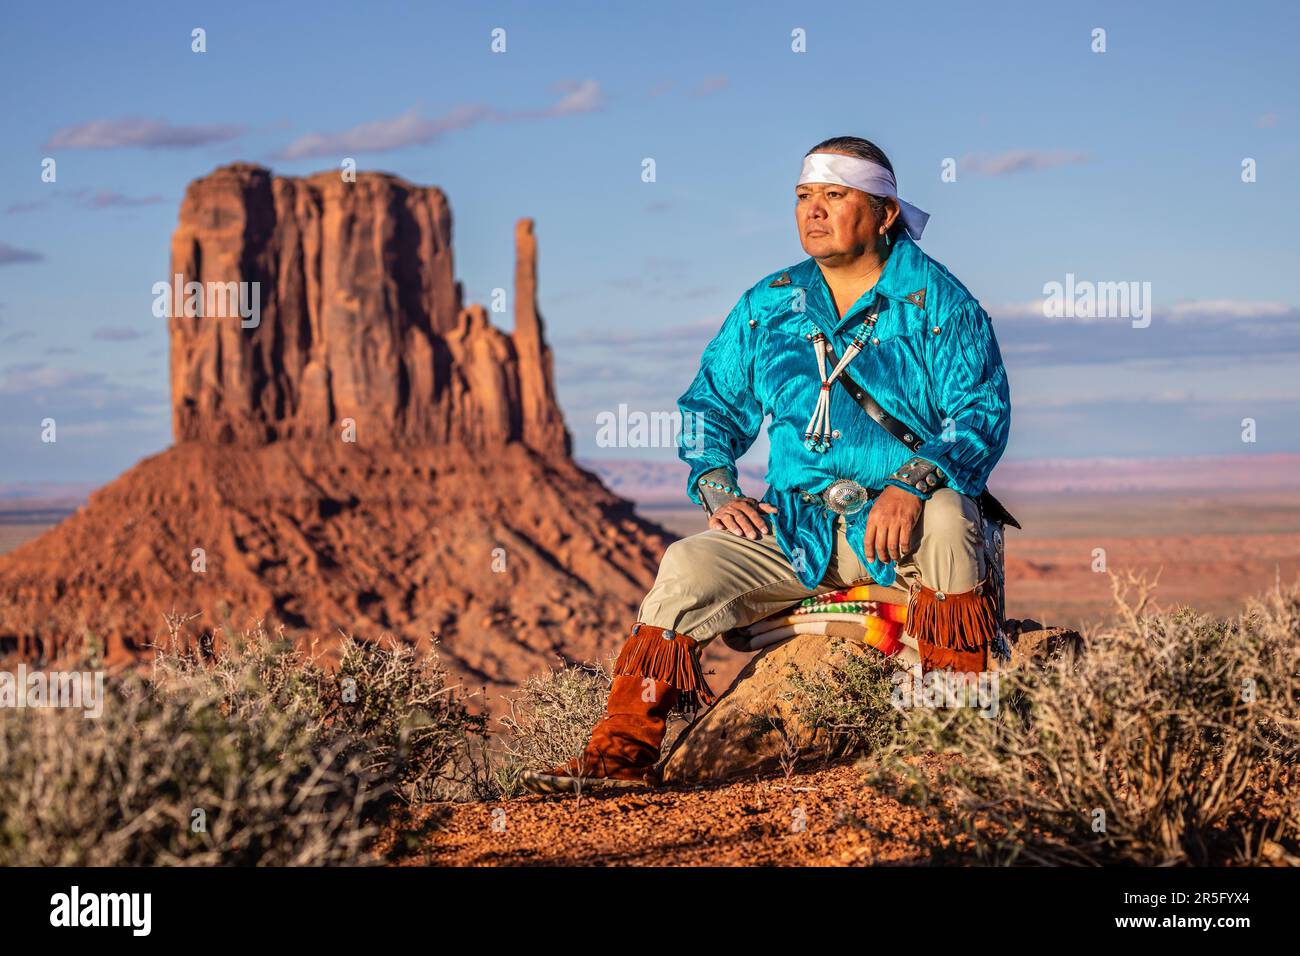 Guerrier américain indien Navajo avec lance au Monument Valley Navajo Tribal Park, Arizona, États-Unis Banque D'Images